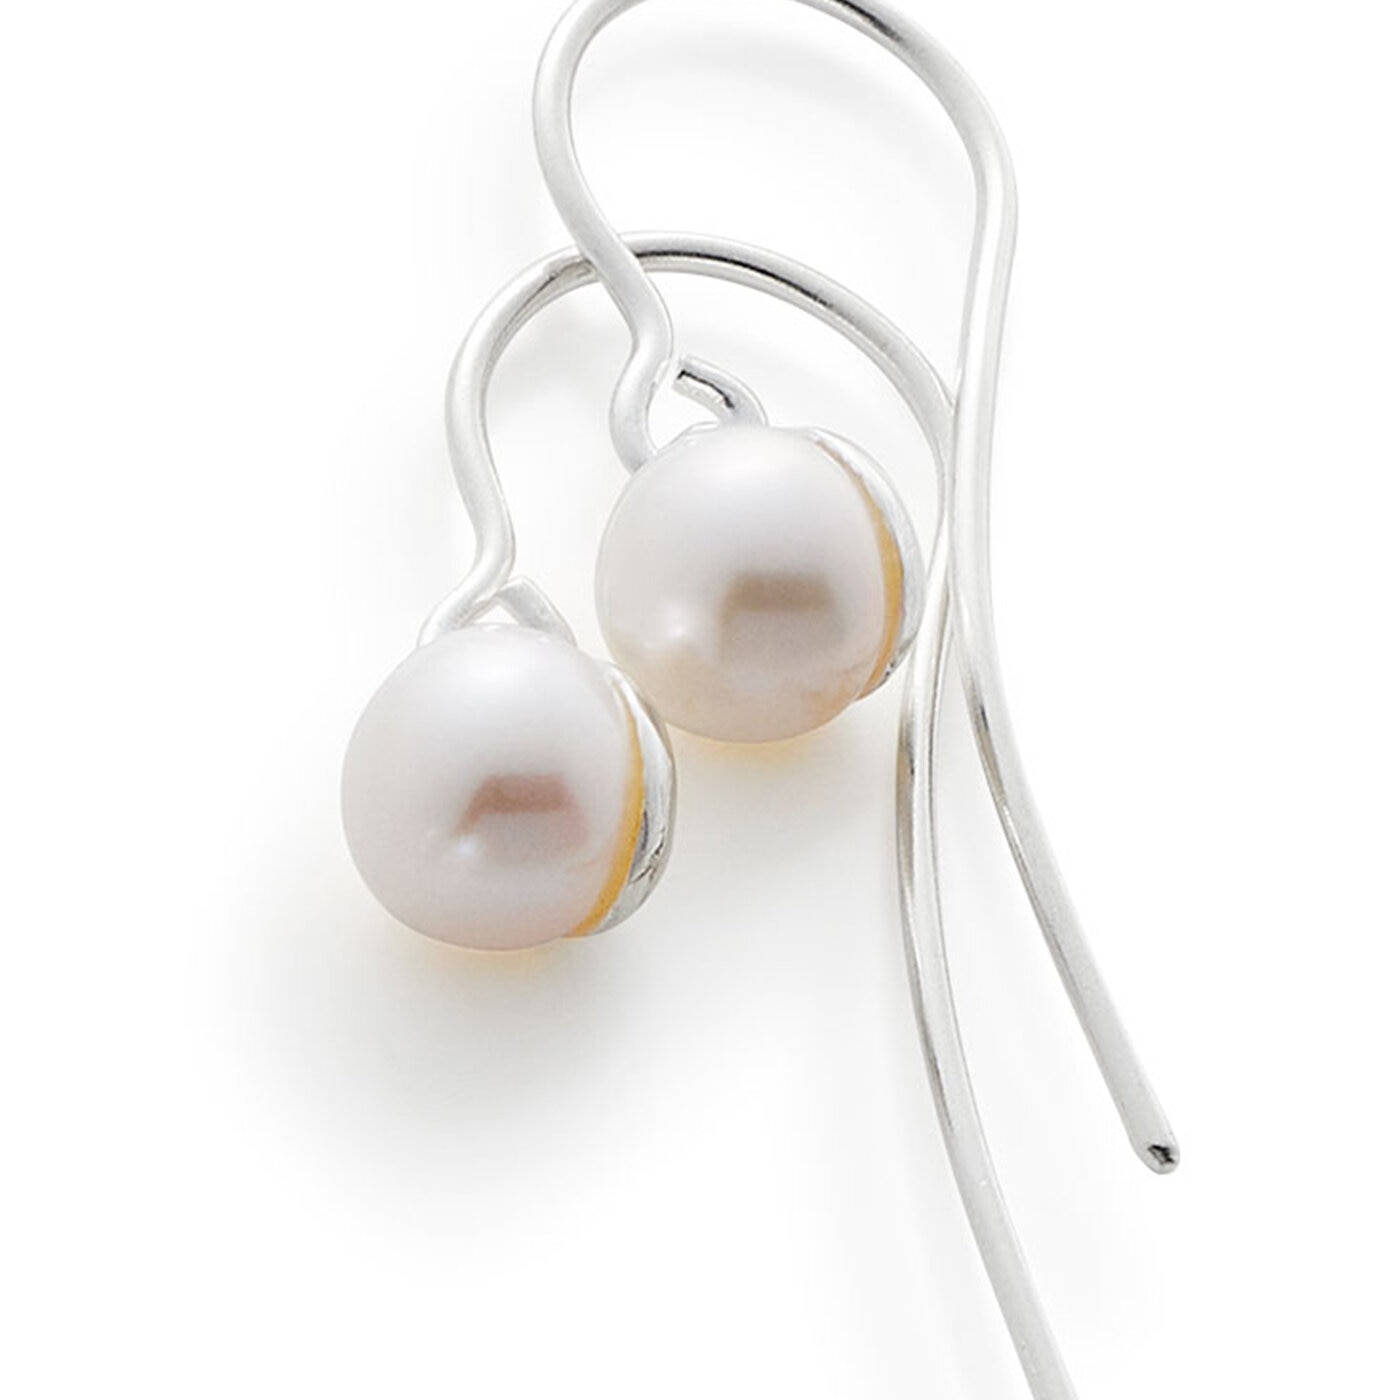 Pearl hook earrings